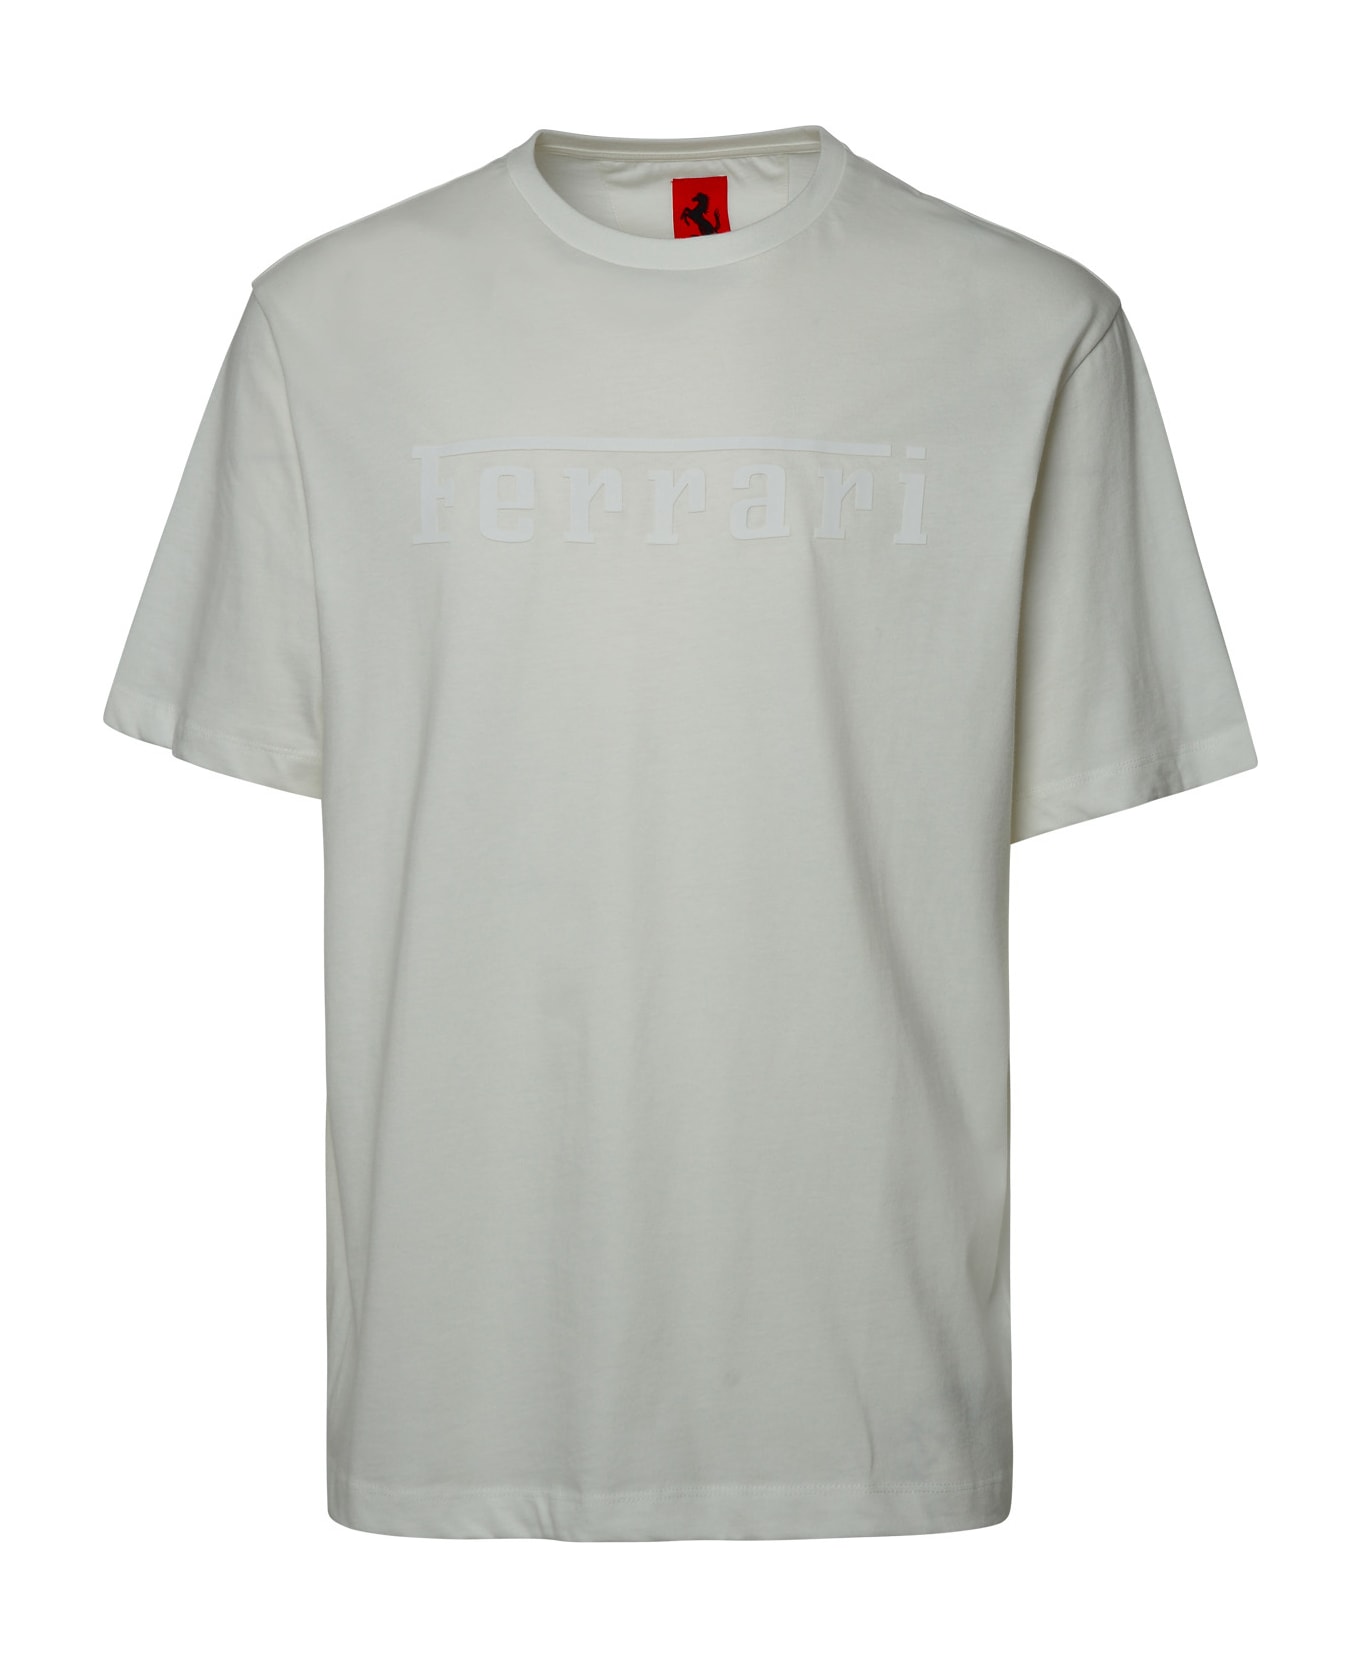 Ferrari White Cotton T-shirt - WHITE シャツ